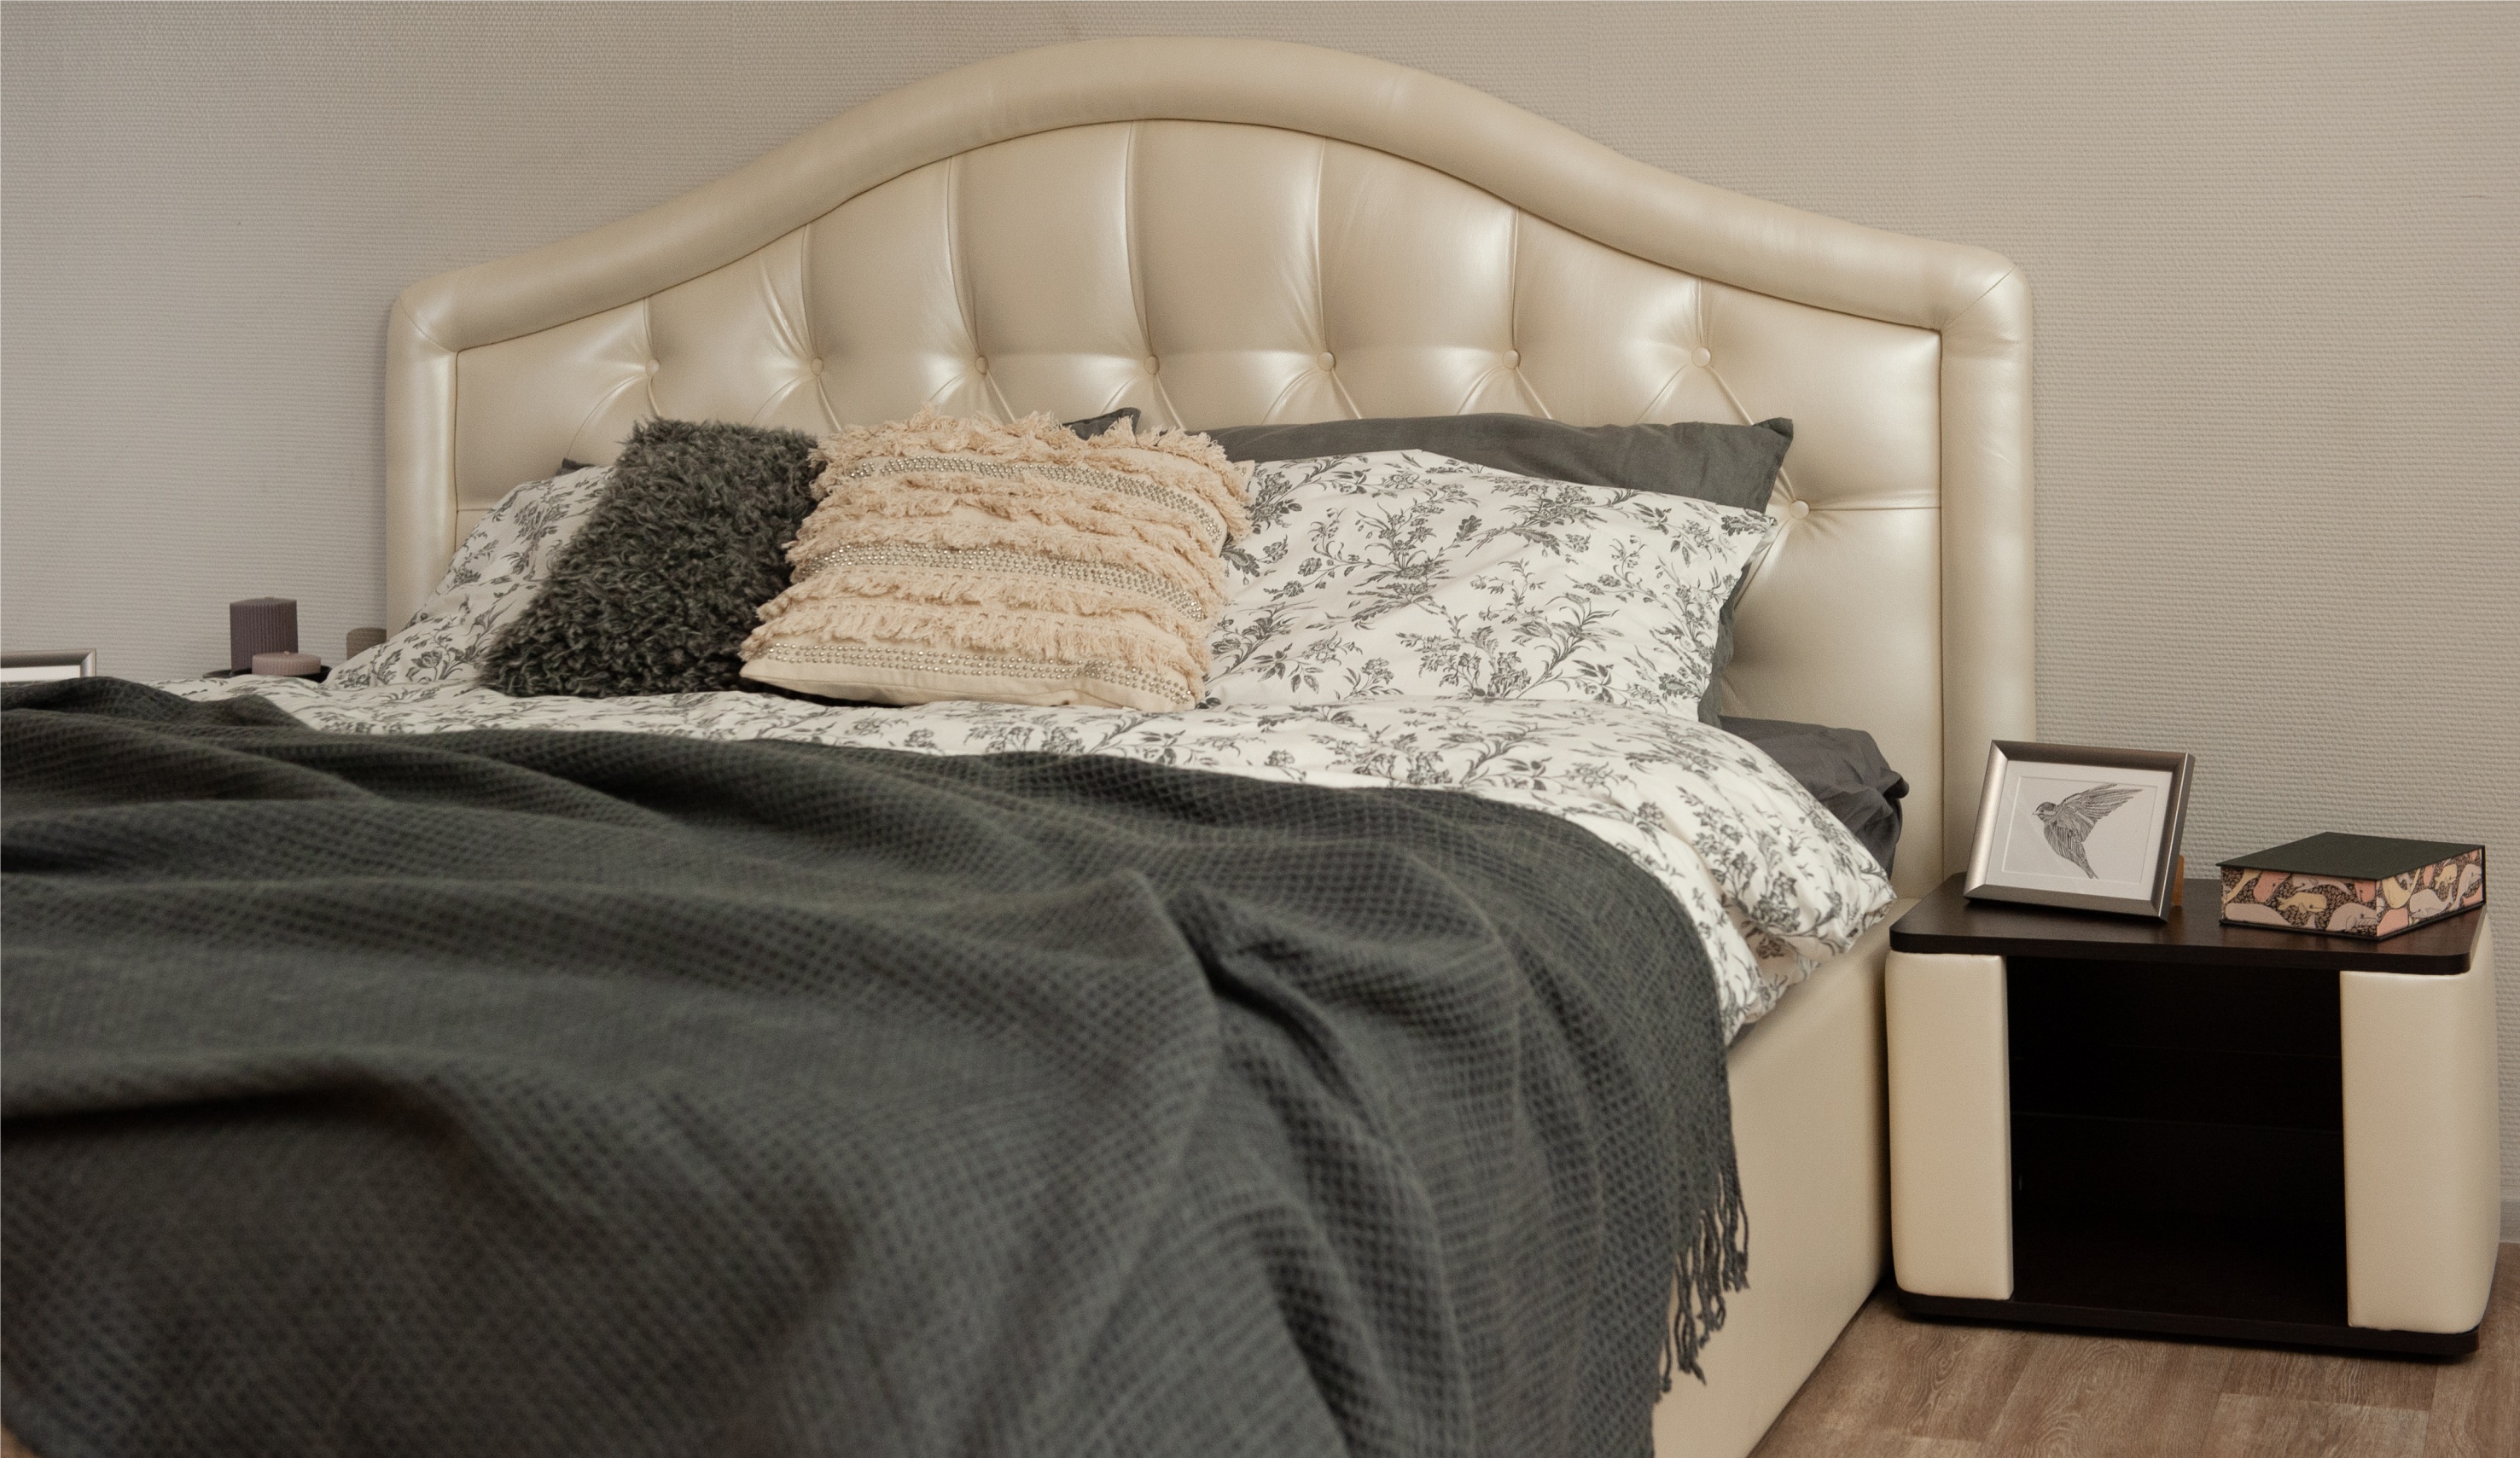 Мягкая кровать Элизабет 140, цвет pearl shell с пуговицами (подъемник) - фото 7